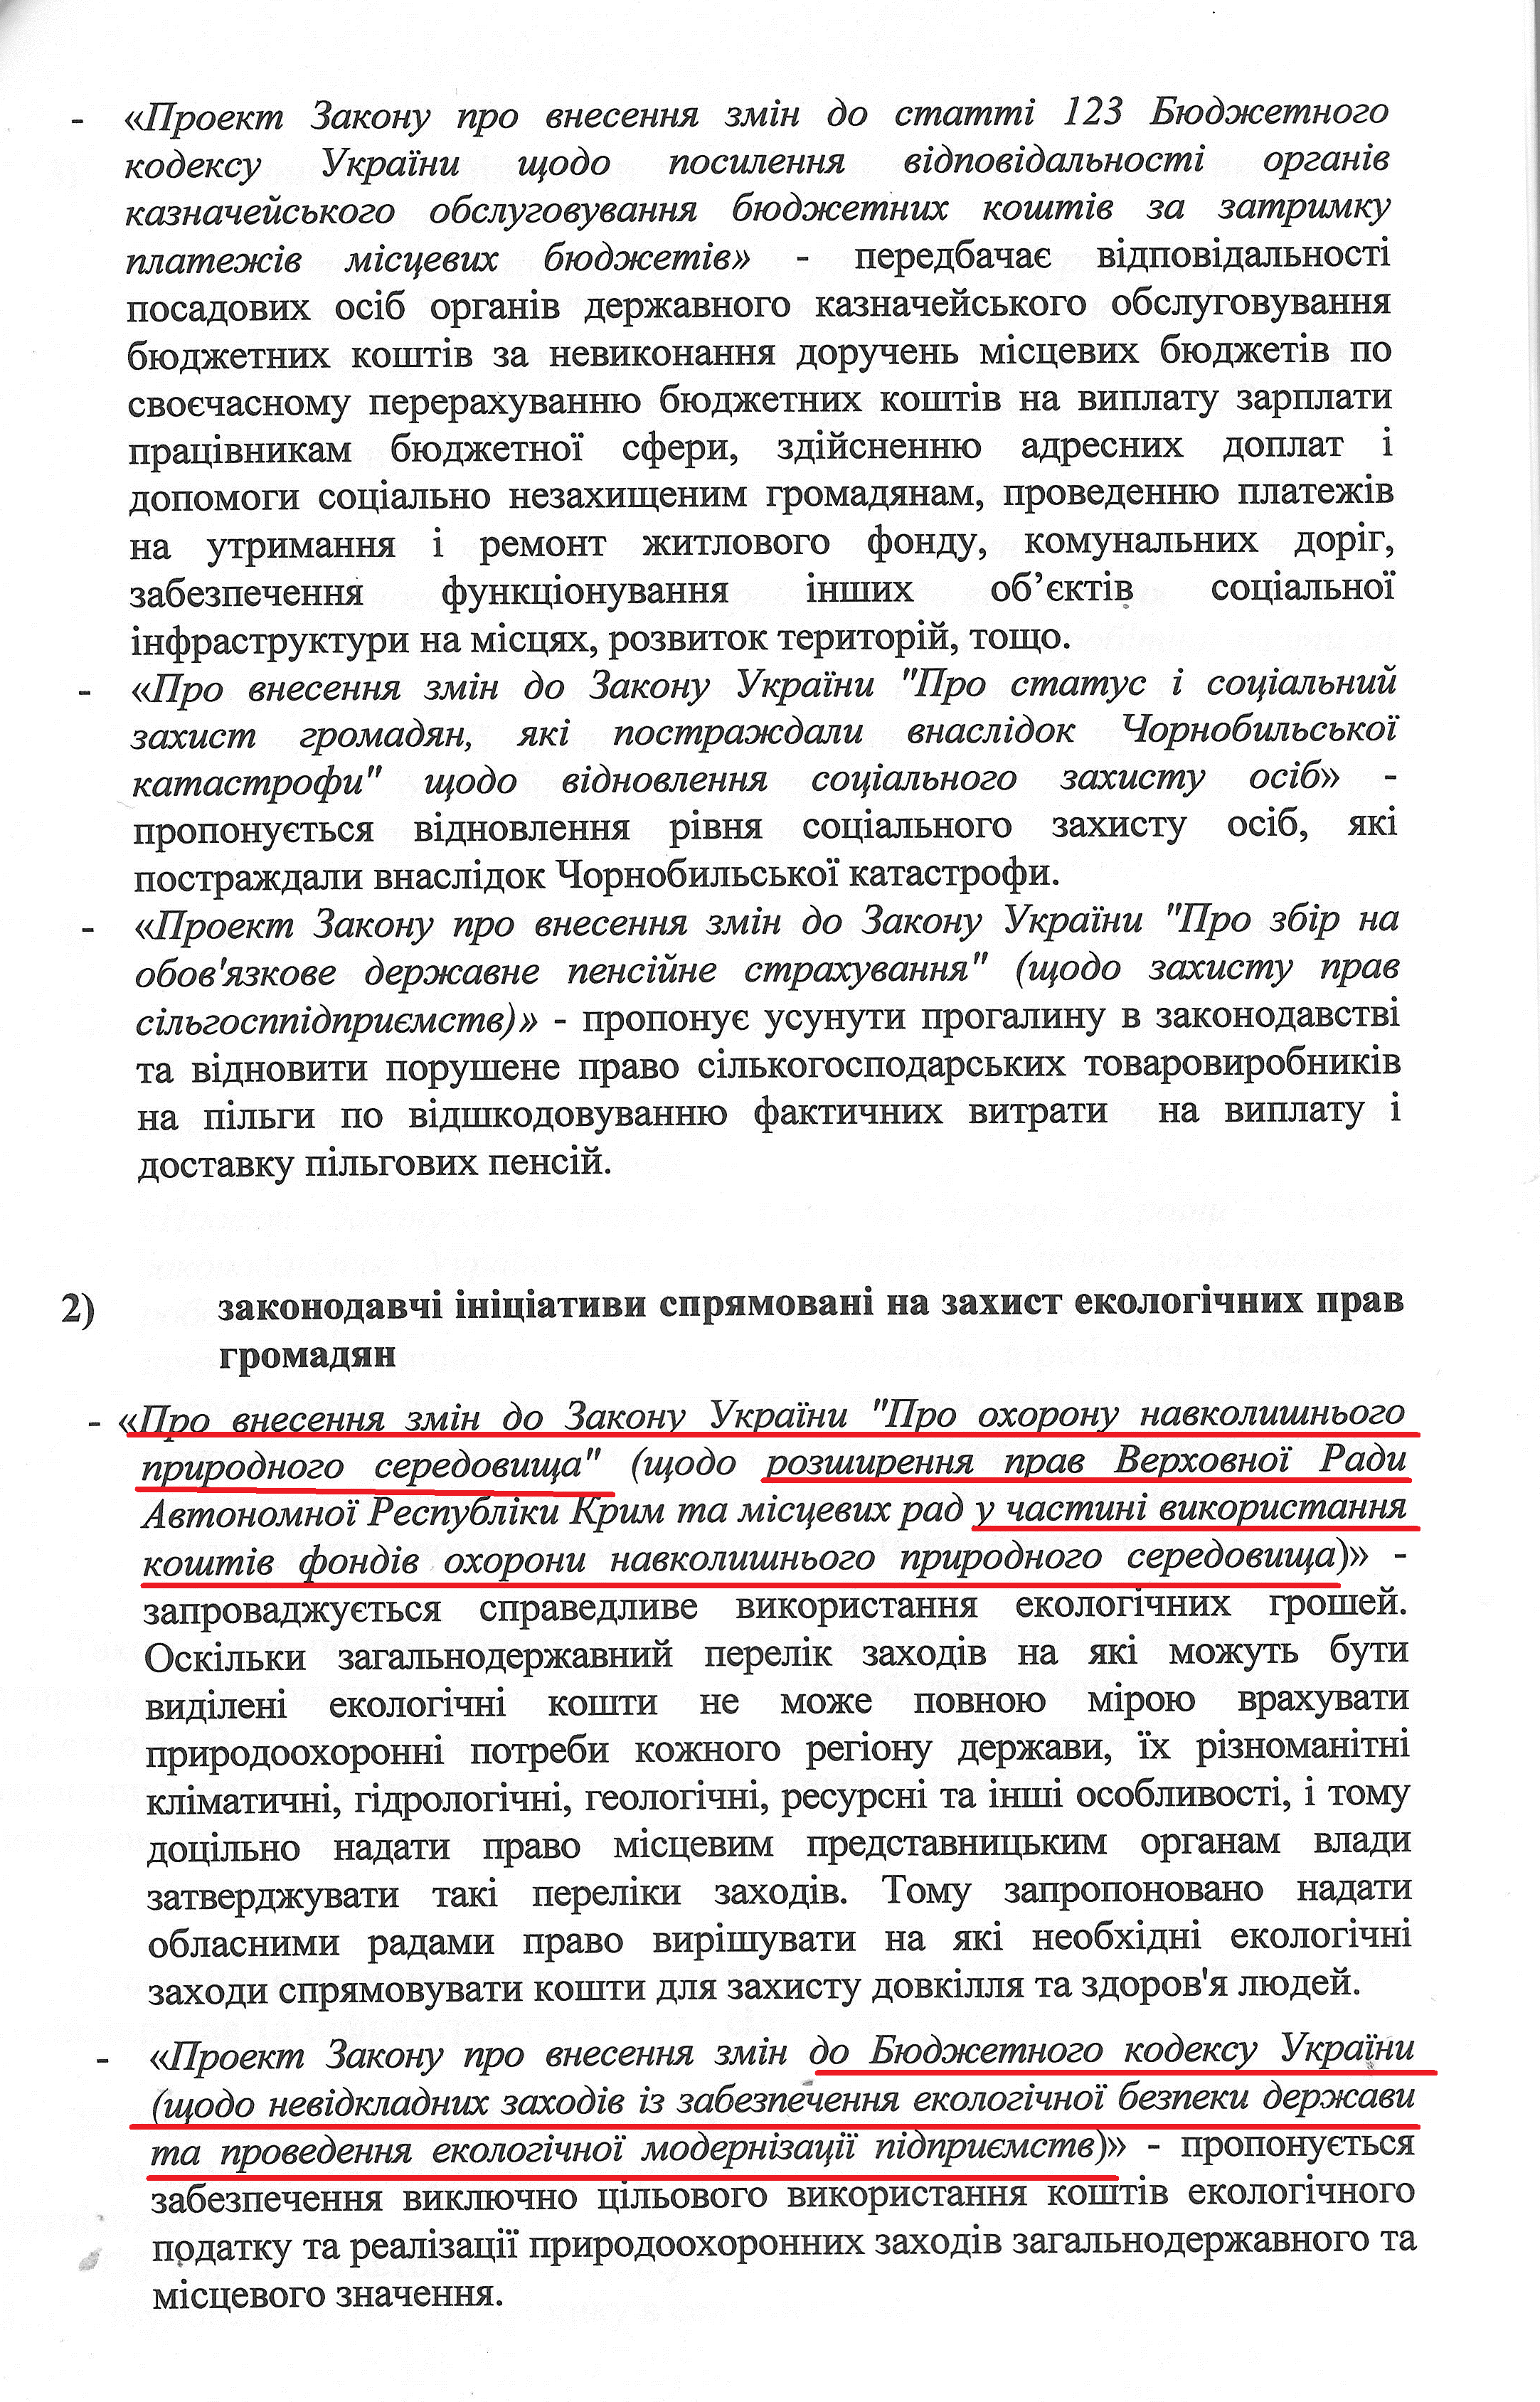 Лист народного депутата Дмитра Шпенова №0810/01-15 від 10 серпня 2015 року